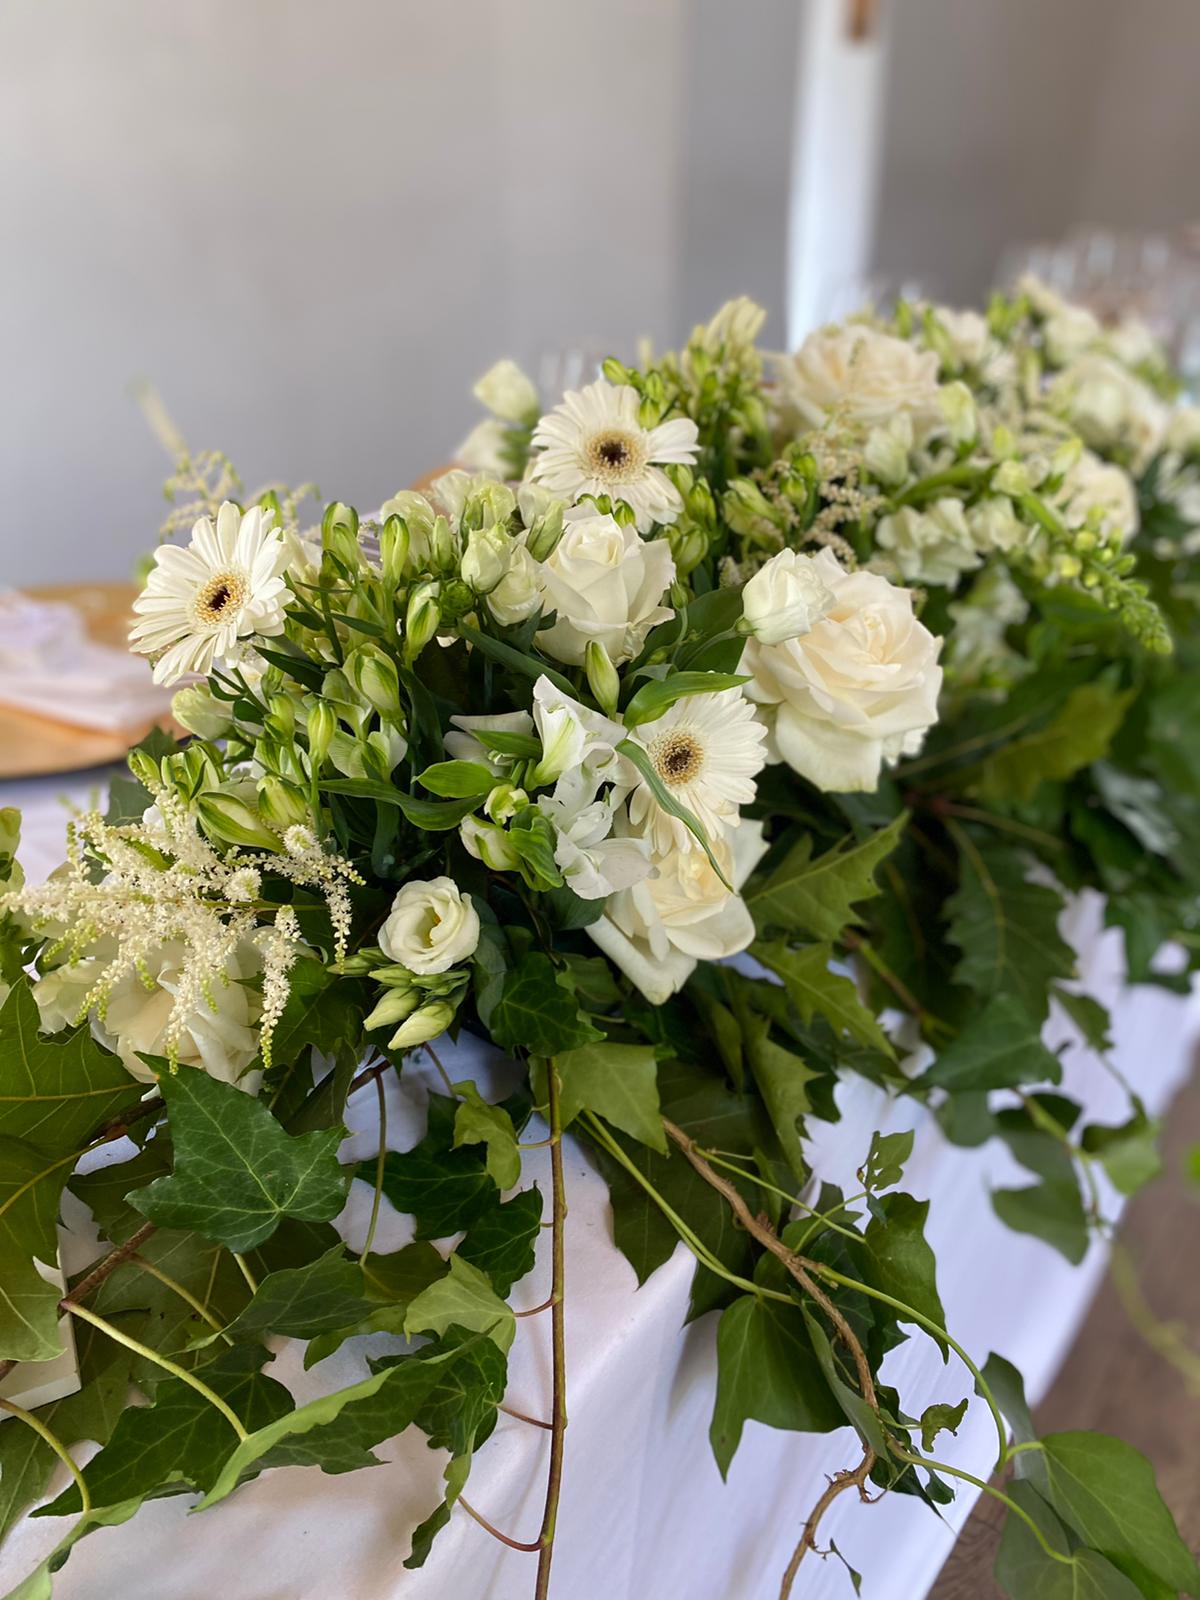 Rustic wedding flower ideas